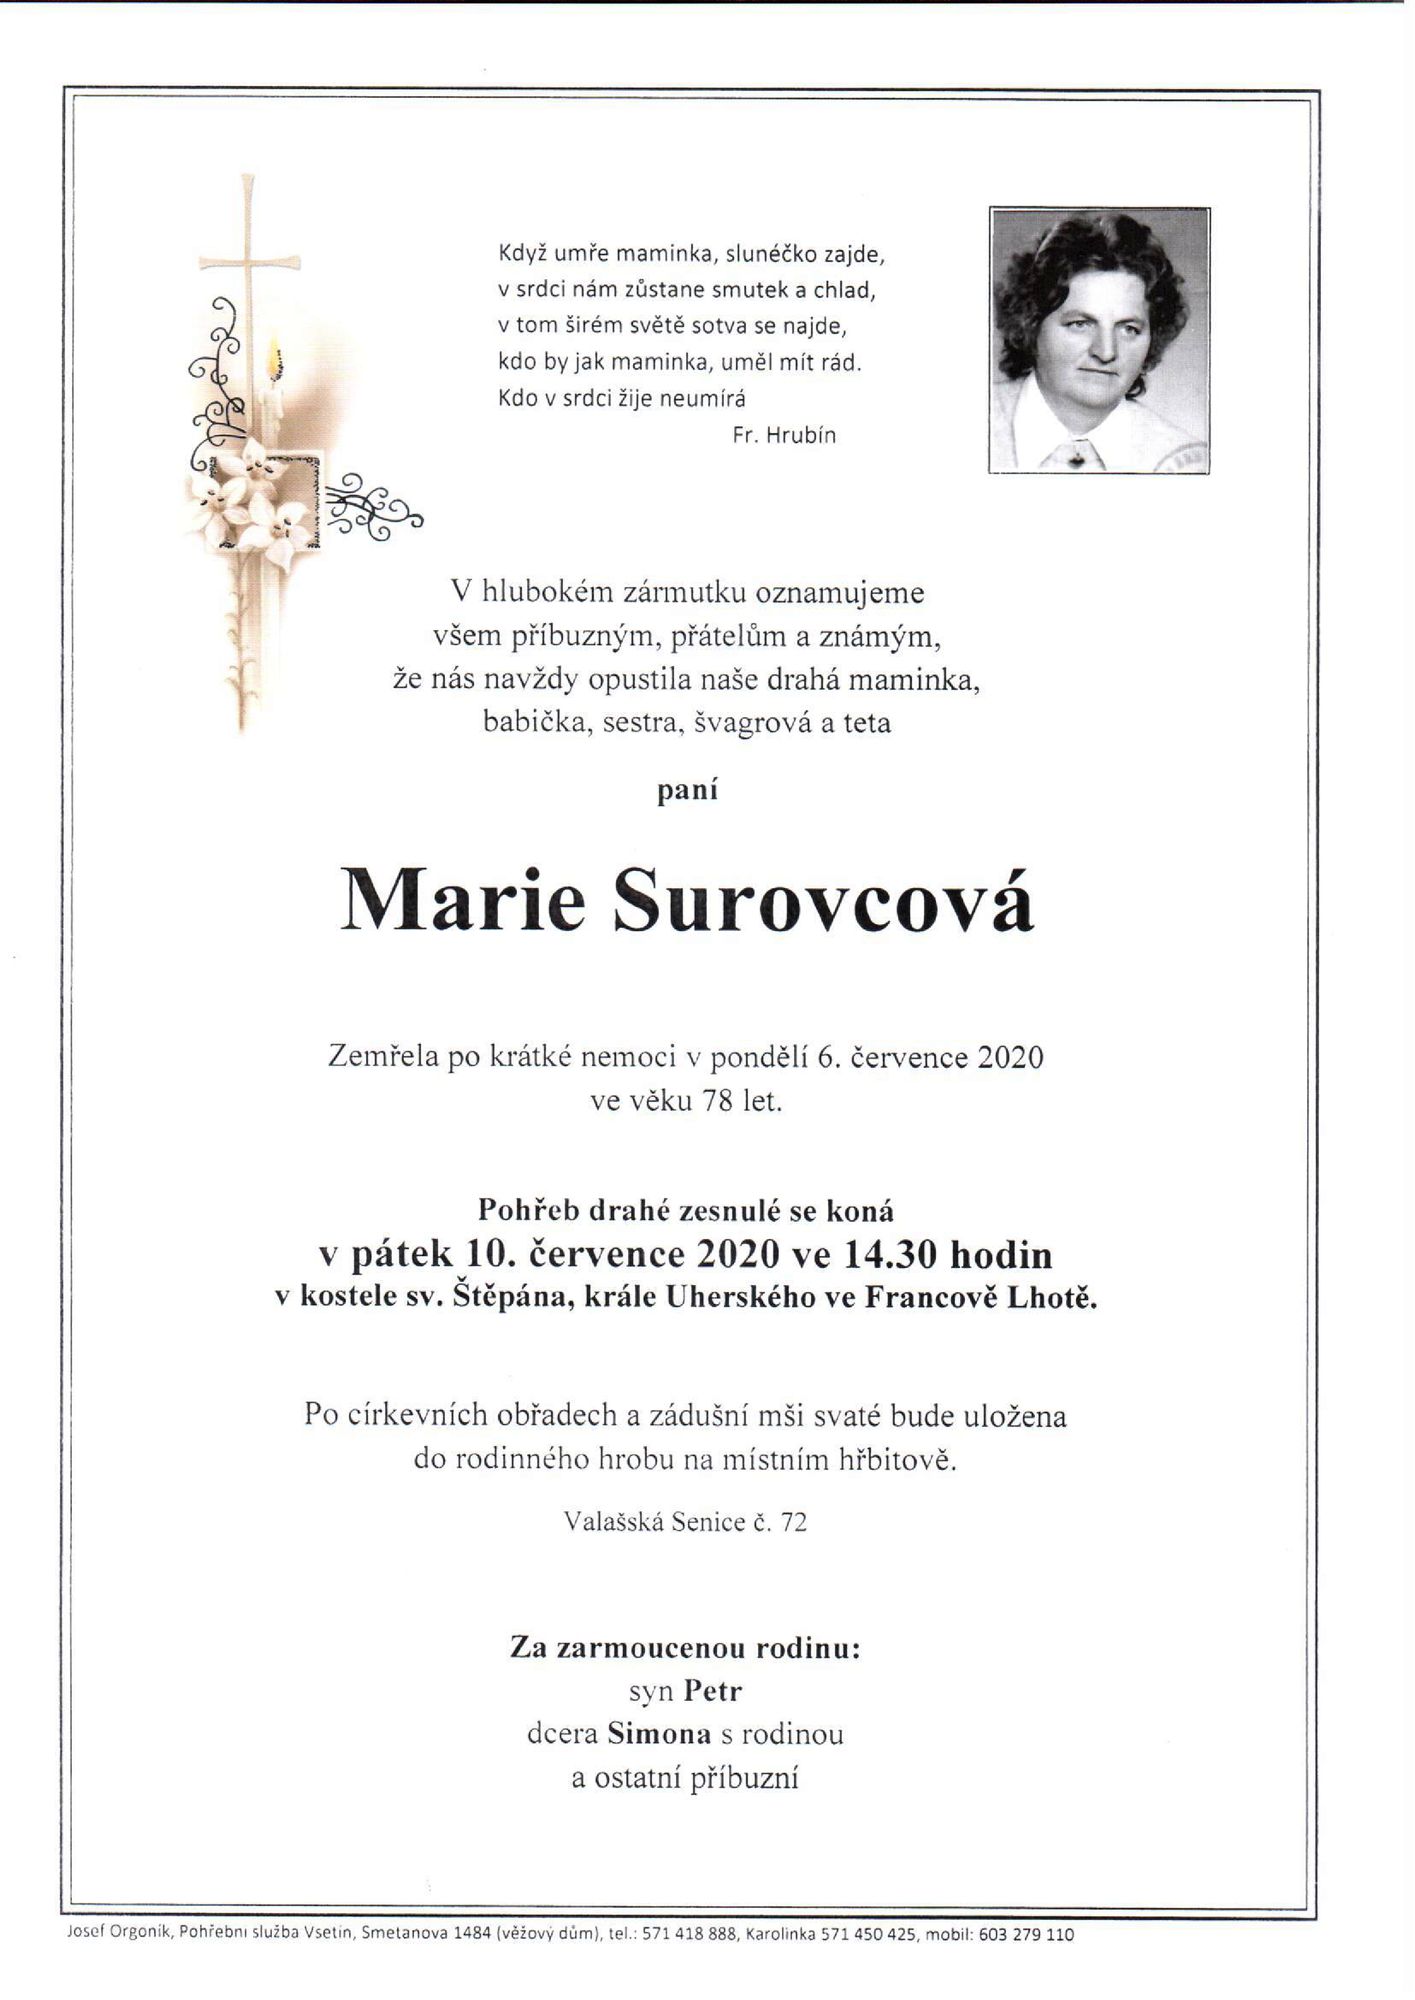 Marie Surovcová